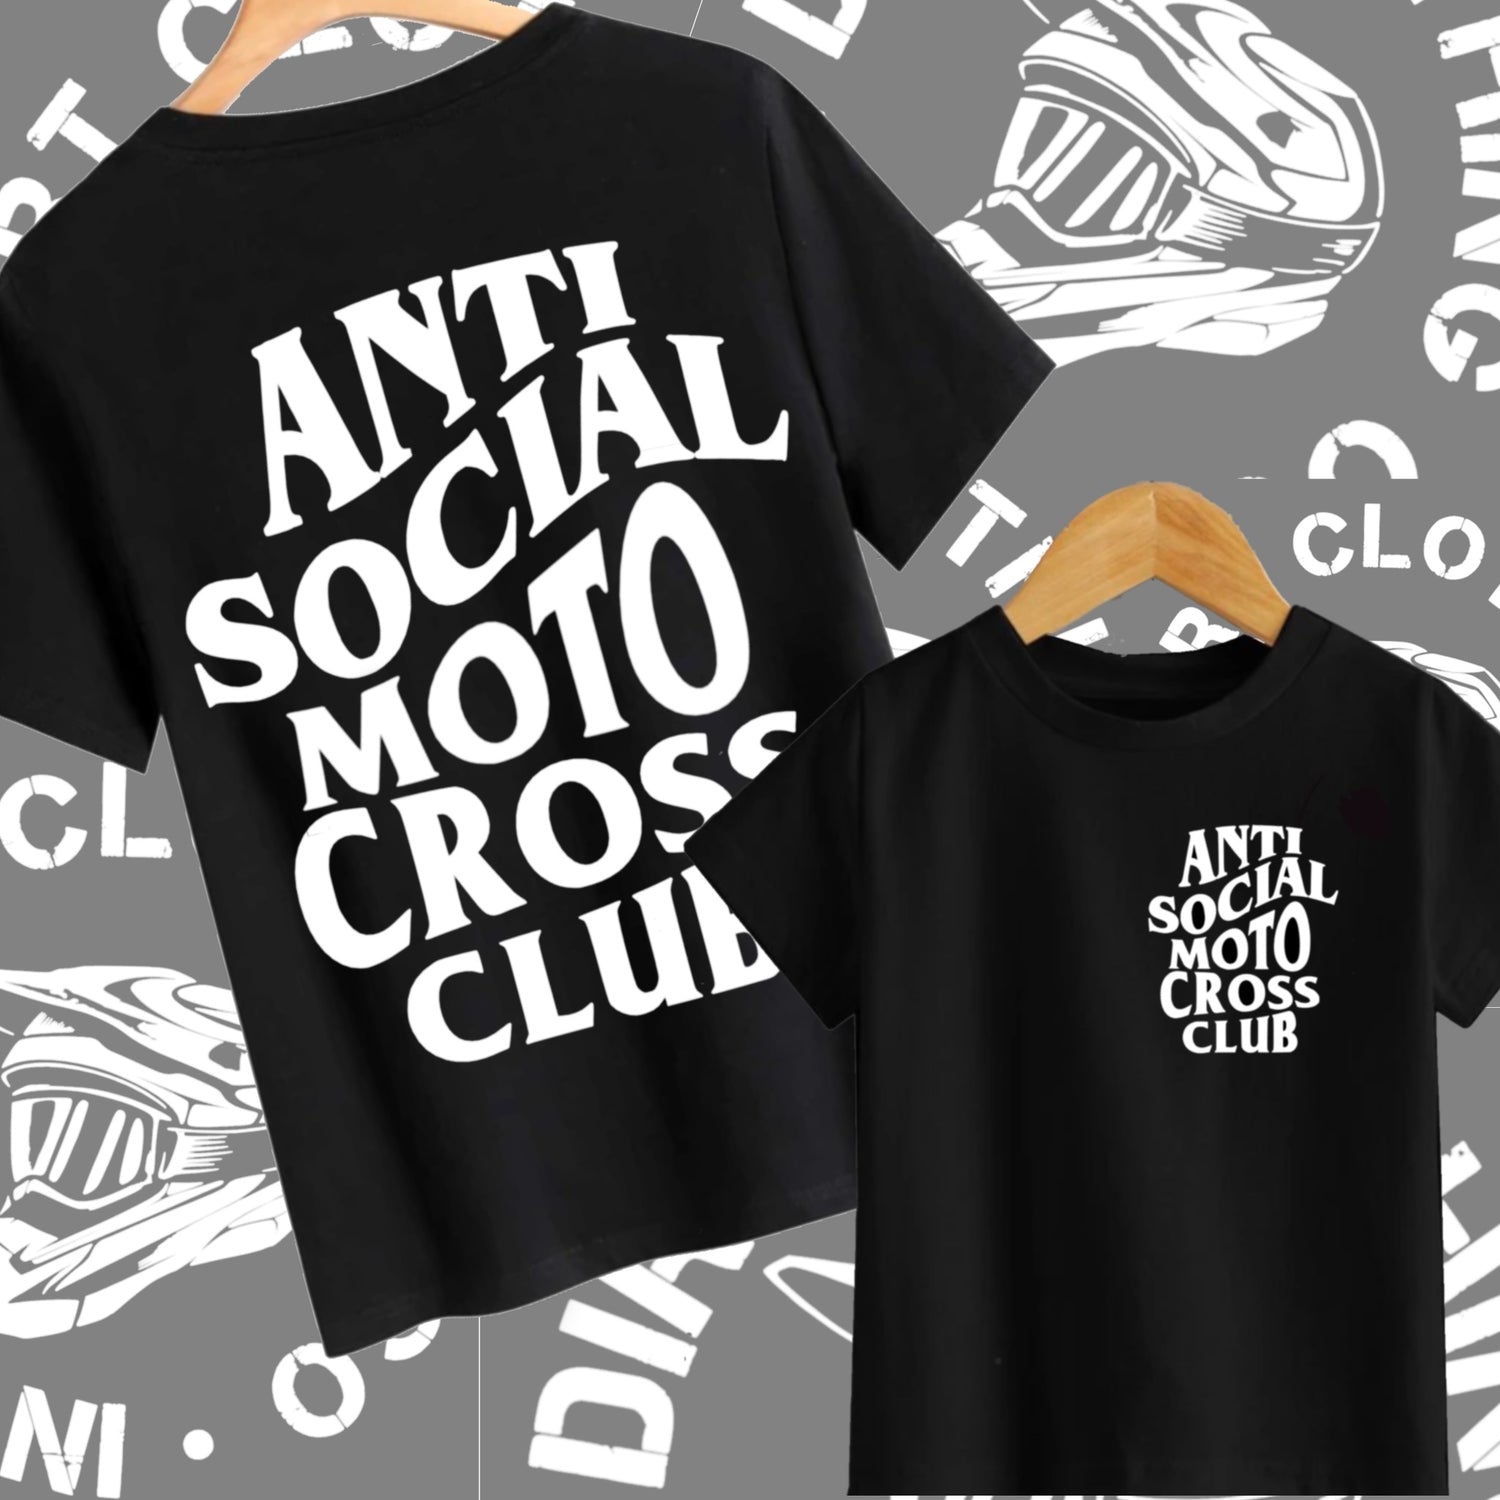 ANTI-SOCIAL CLUB